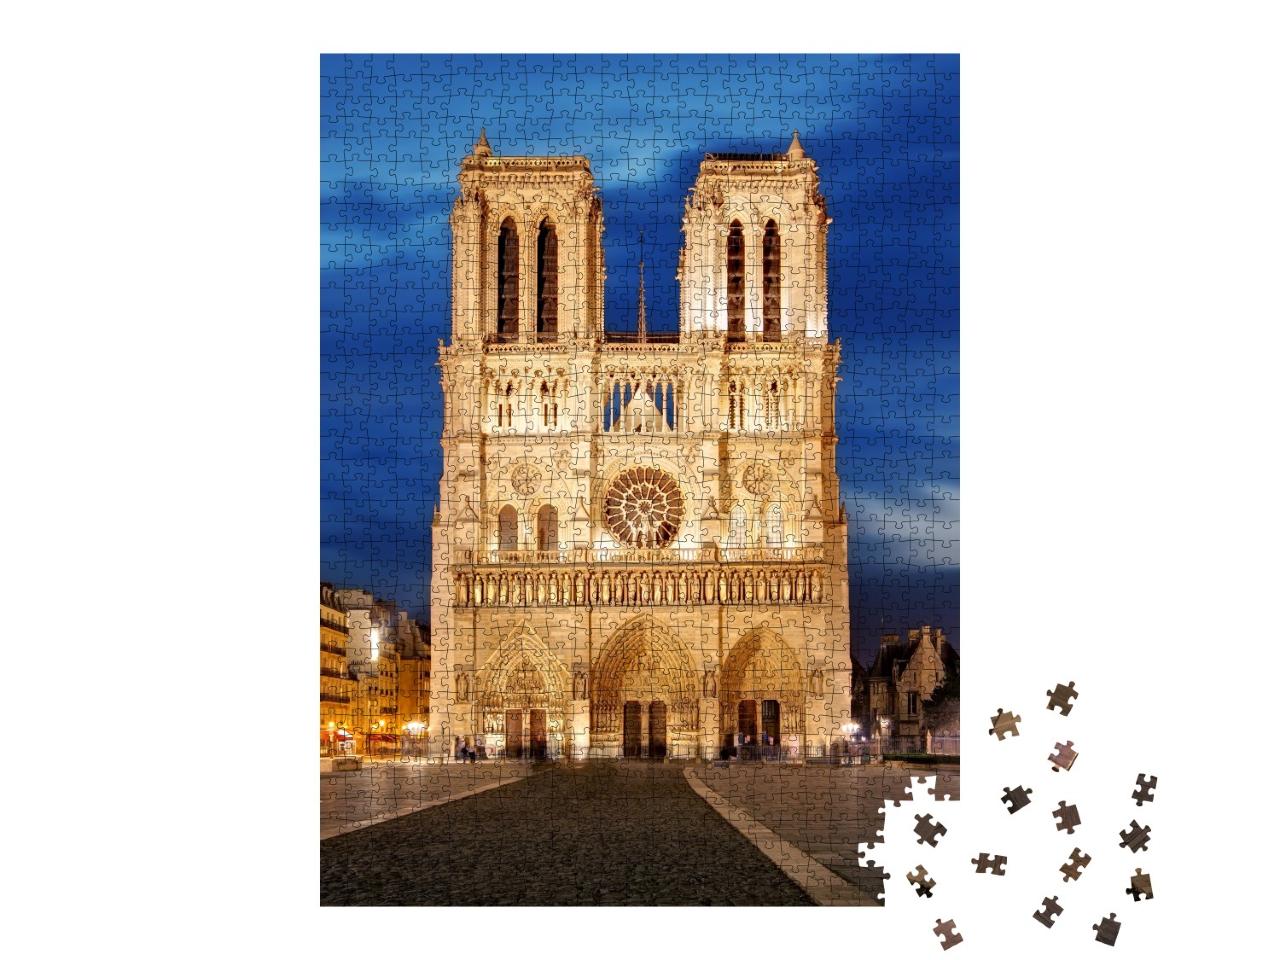 Puzzle de 1000 pièces « Notre Dame, symbole de Paris, France »